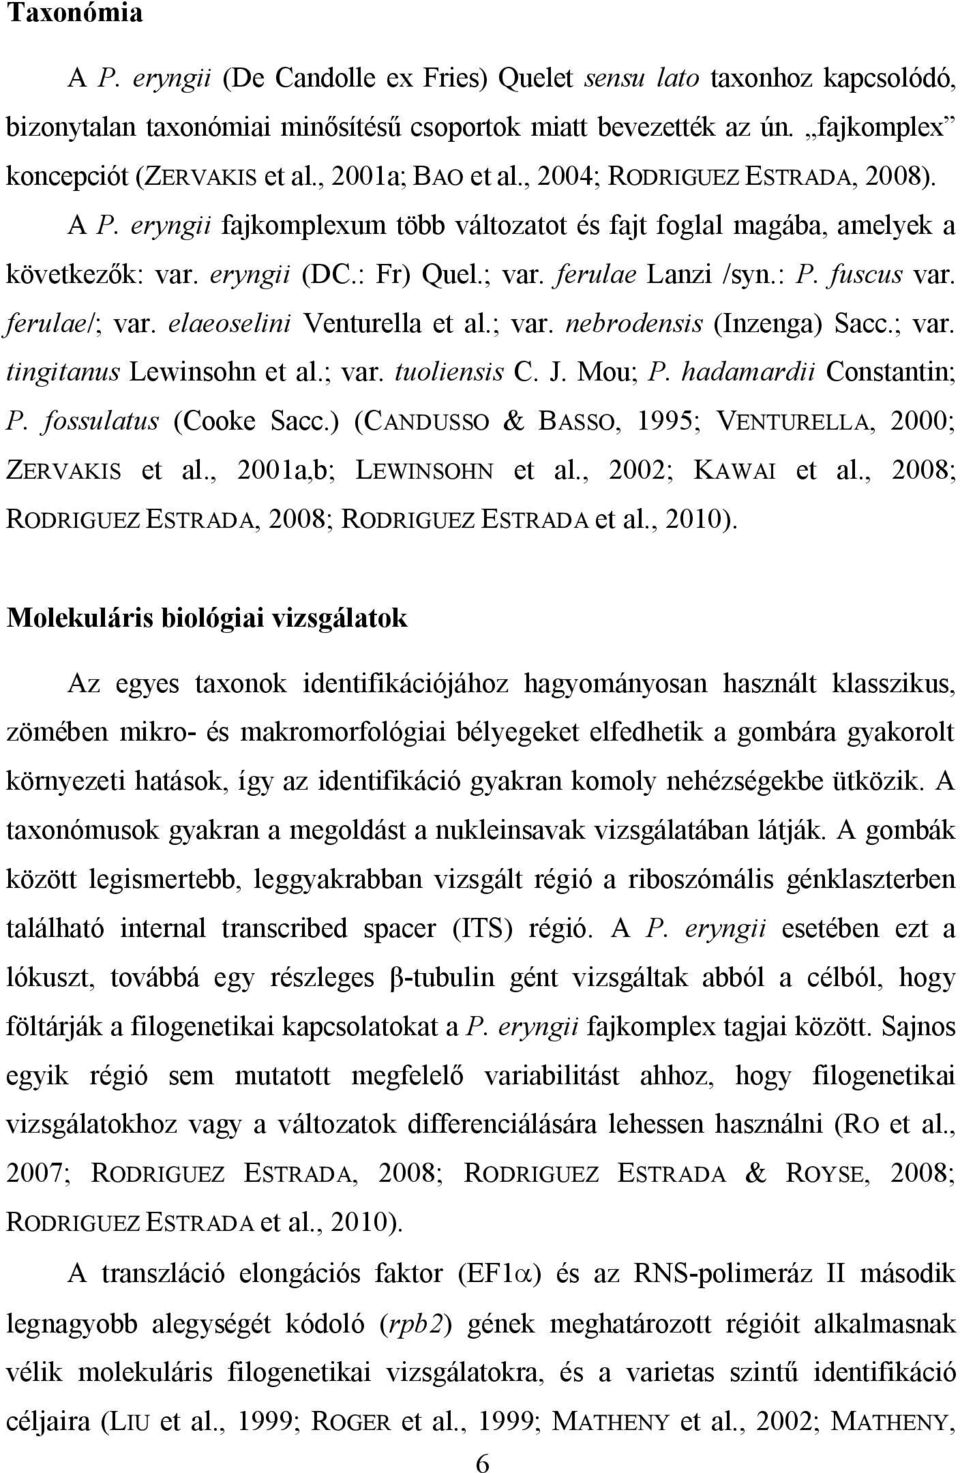 fuscus var. ferulae/; var. elaeoselini Venturella et al.; var. nebrodensis (Inzenga) Sacc.; var. tingitanus Lewinsohn et al.; var. tuoliensis C. J. Mou; P. hadamardii Constantin; P.